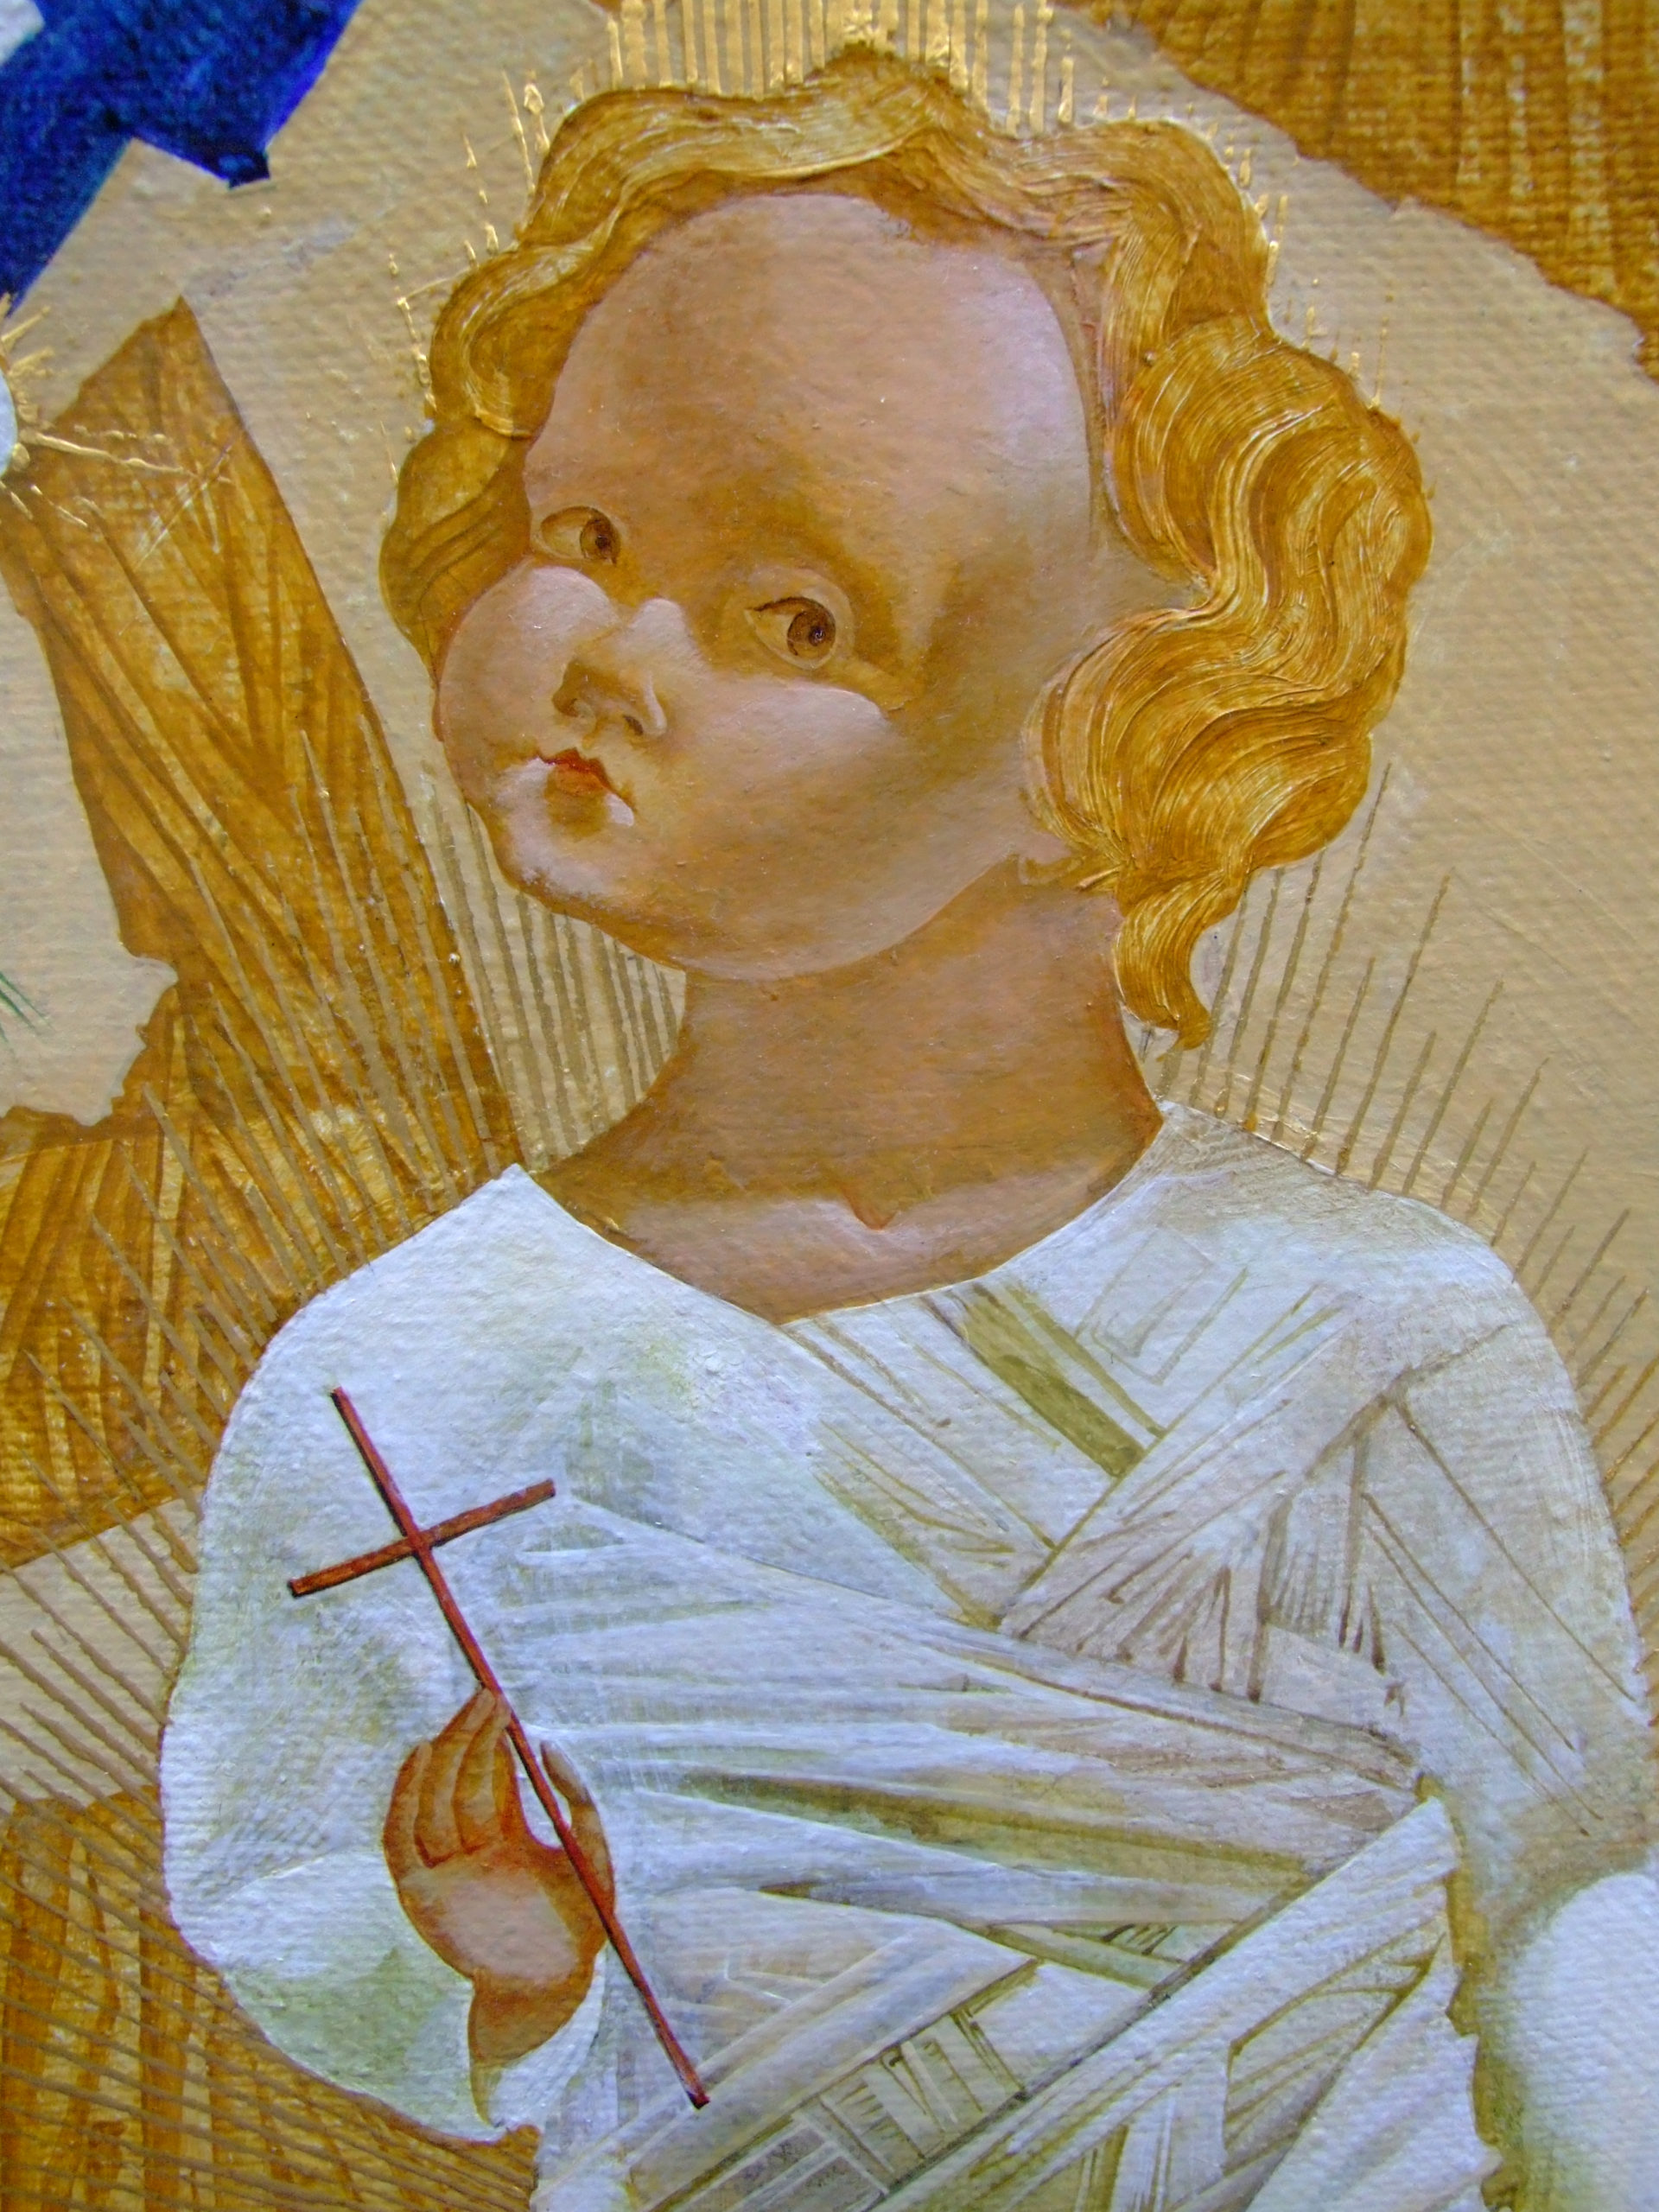 Denys Savchenko. Religious painting. Nativity